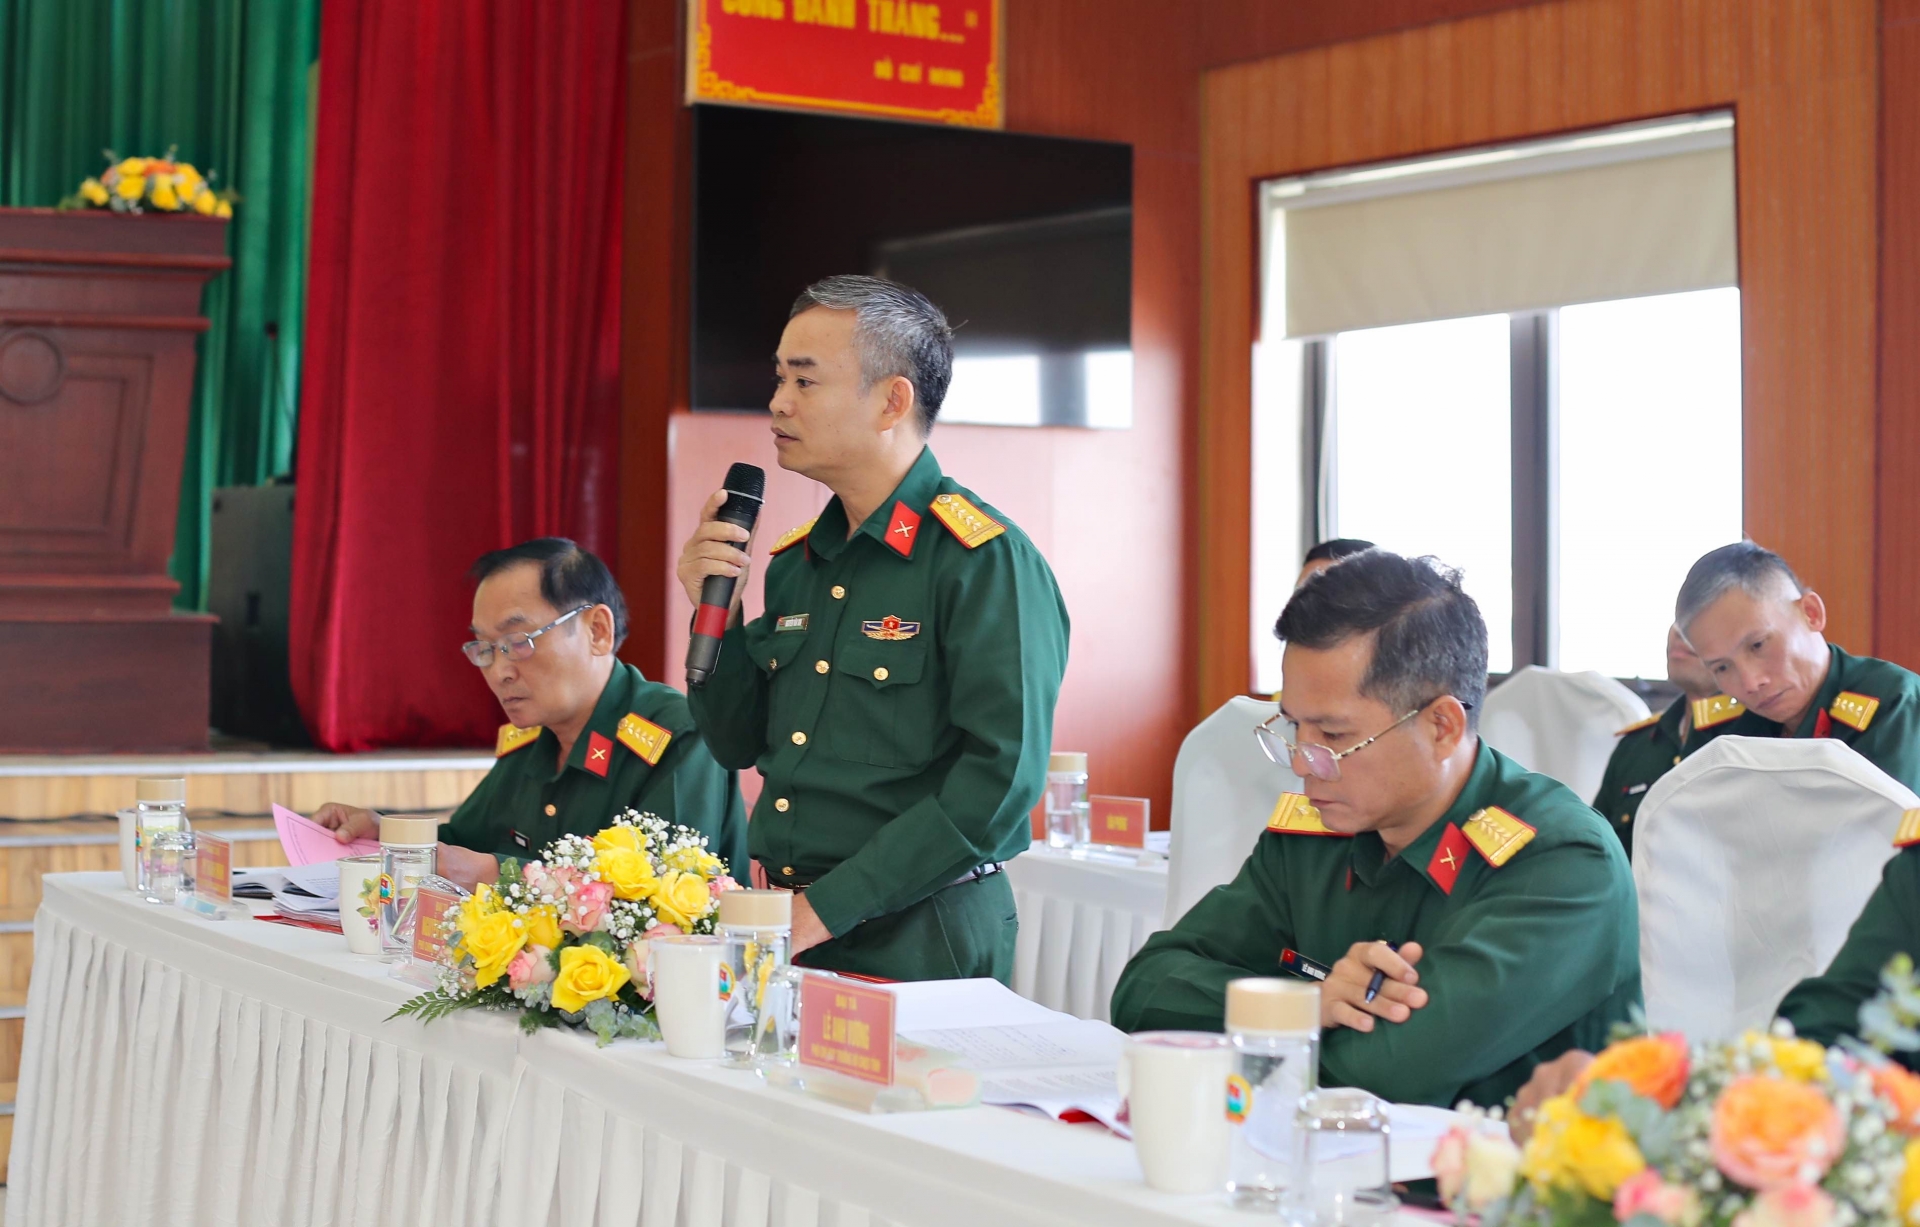 Đại tá Nguyễn Văn Sơn, Phó Chính uỷ, Bộ CHQS tỉnh báo cáo về công tác Đảng, công tác chính trị trong Bộ CHQS tỉnh